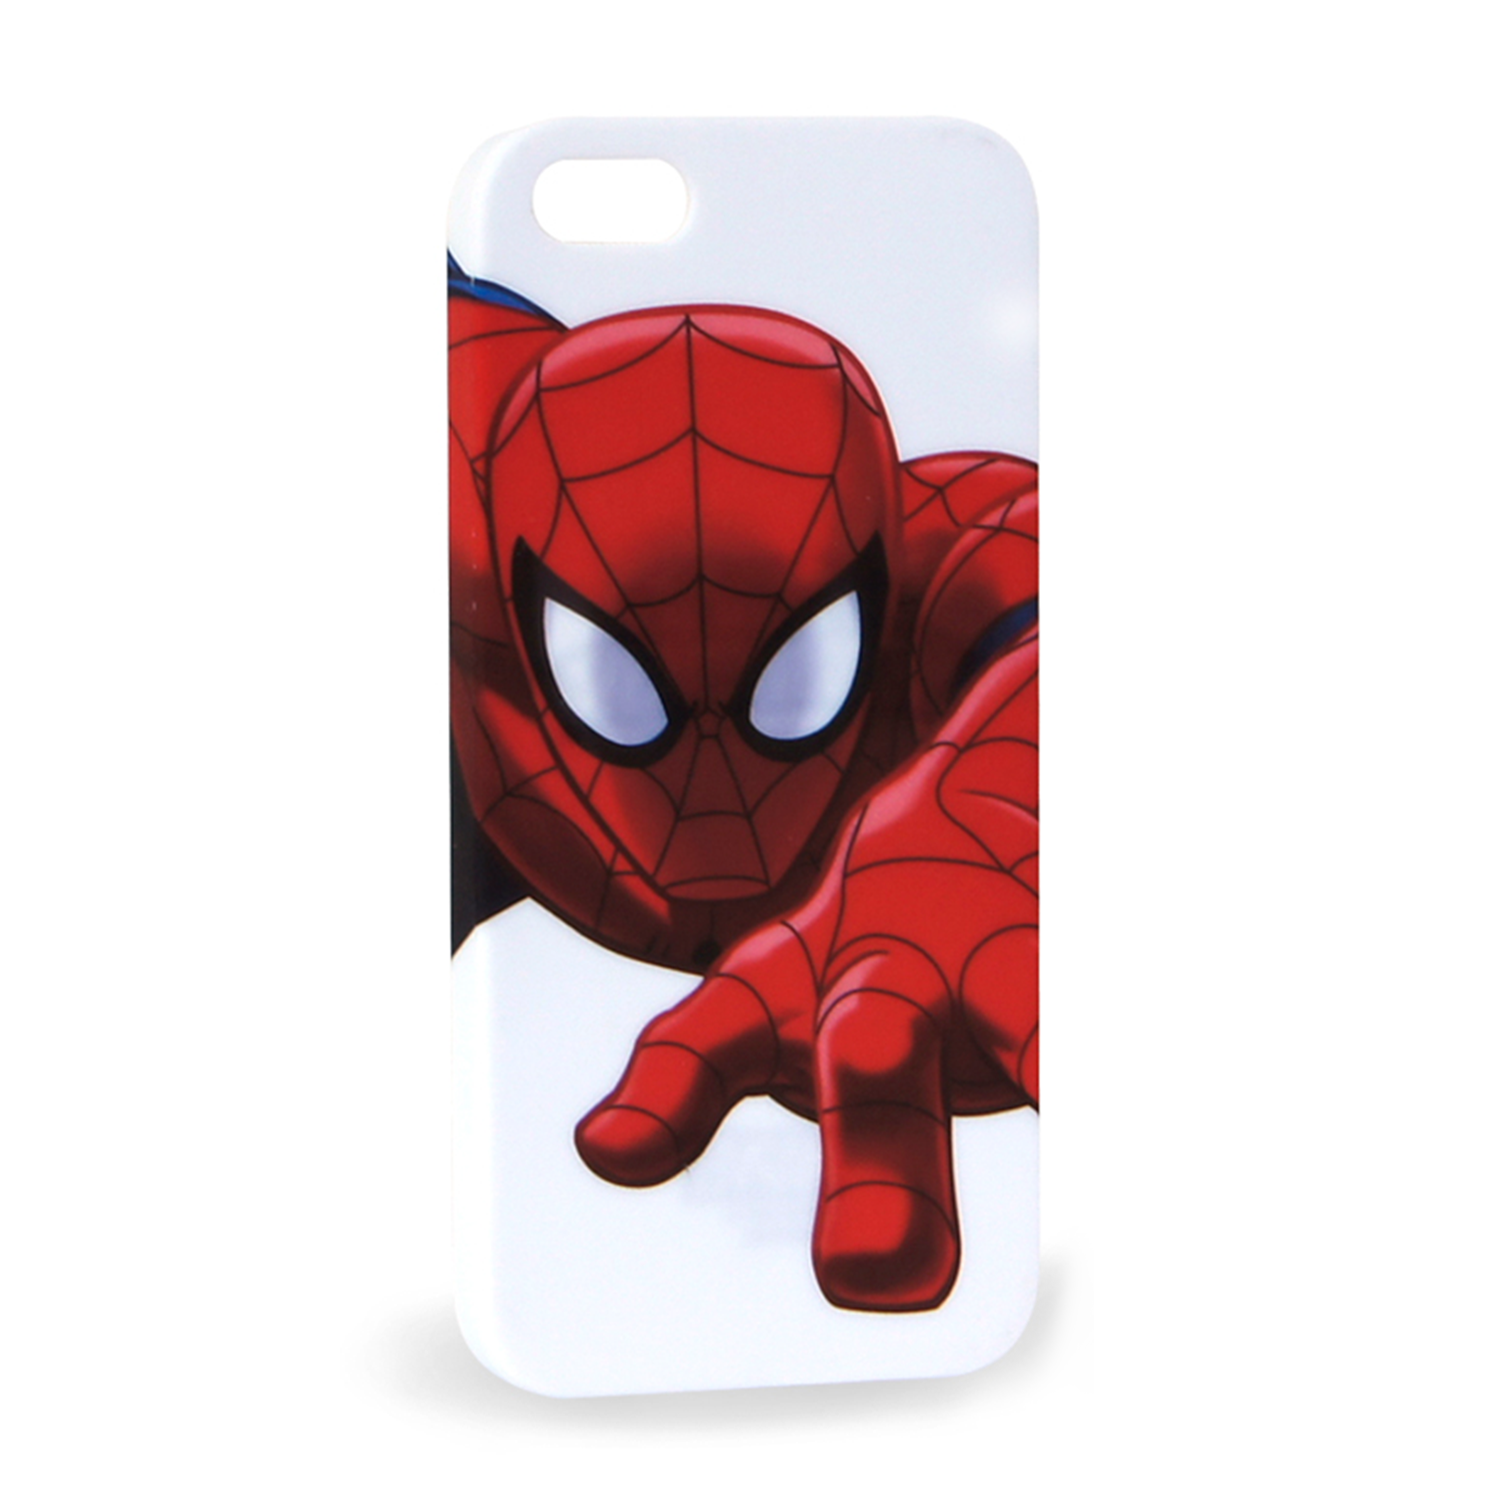 Чехол Disney для iPhone 5 Человек-паук - фото 1